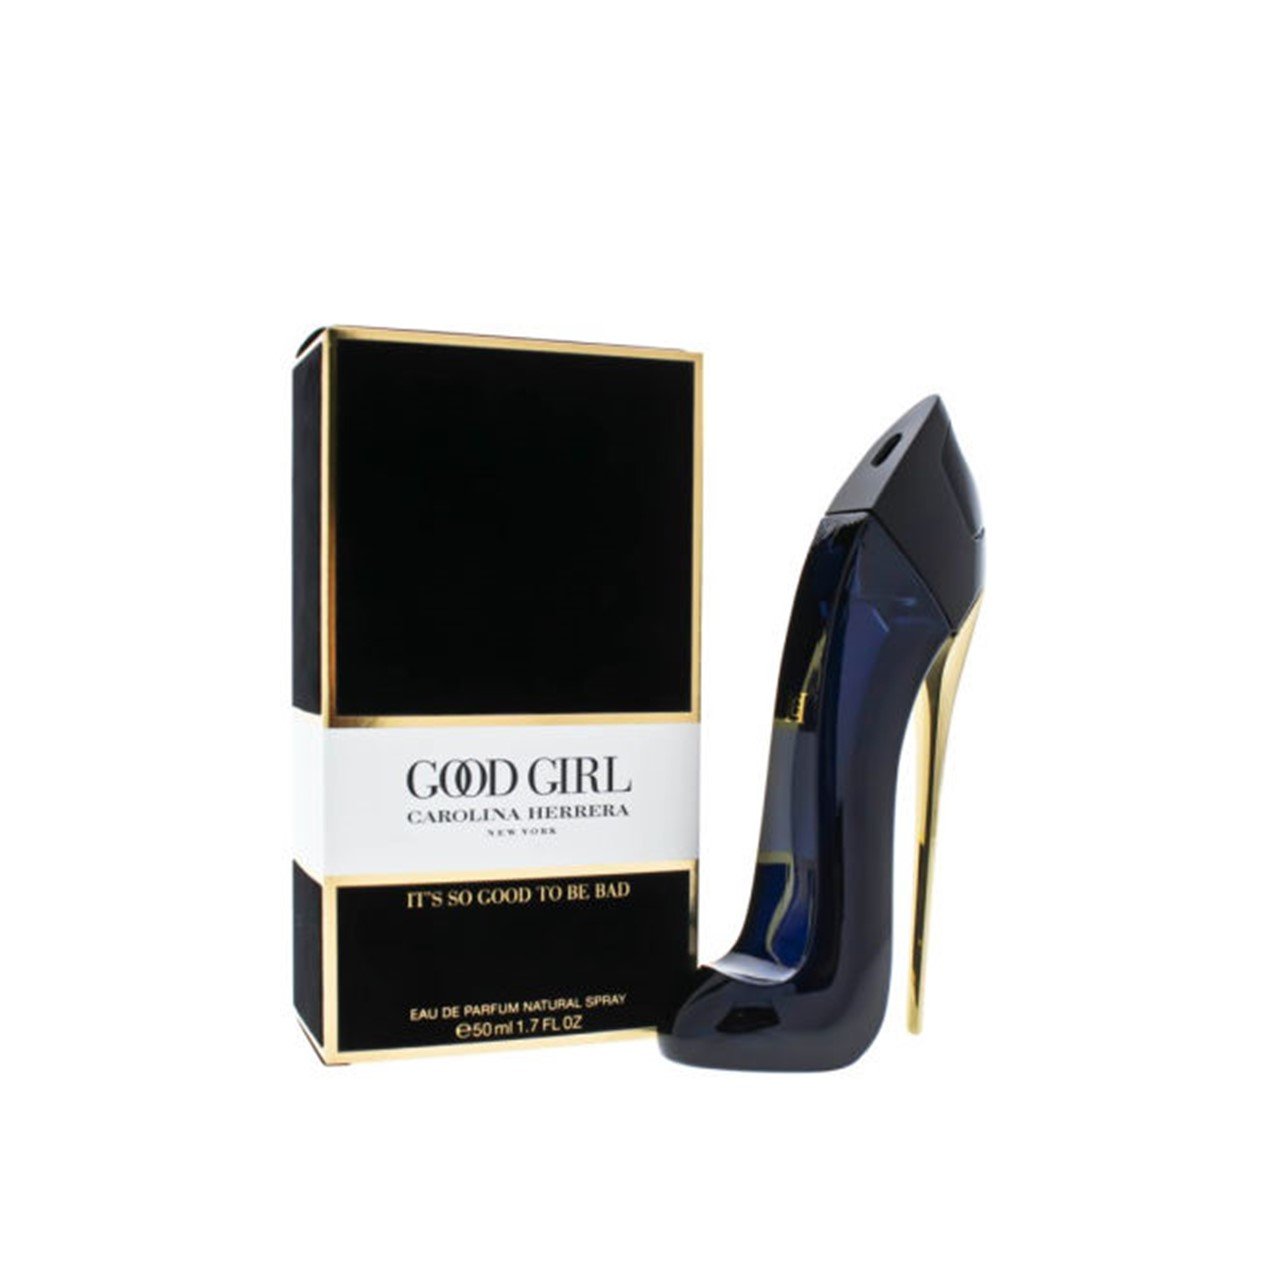 Carolina Herrera Good Girl Eau de Parfum 50ml (1.7fl oz)